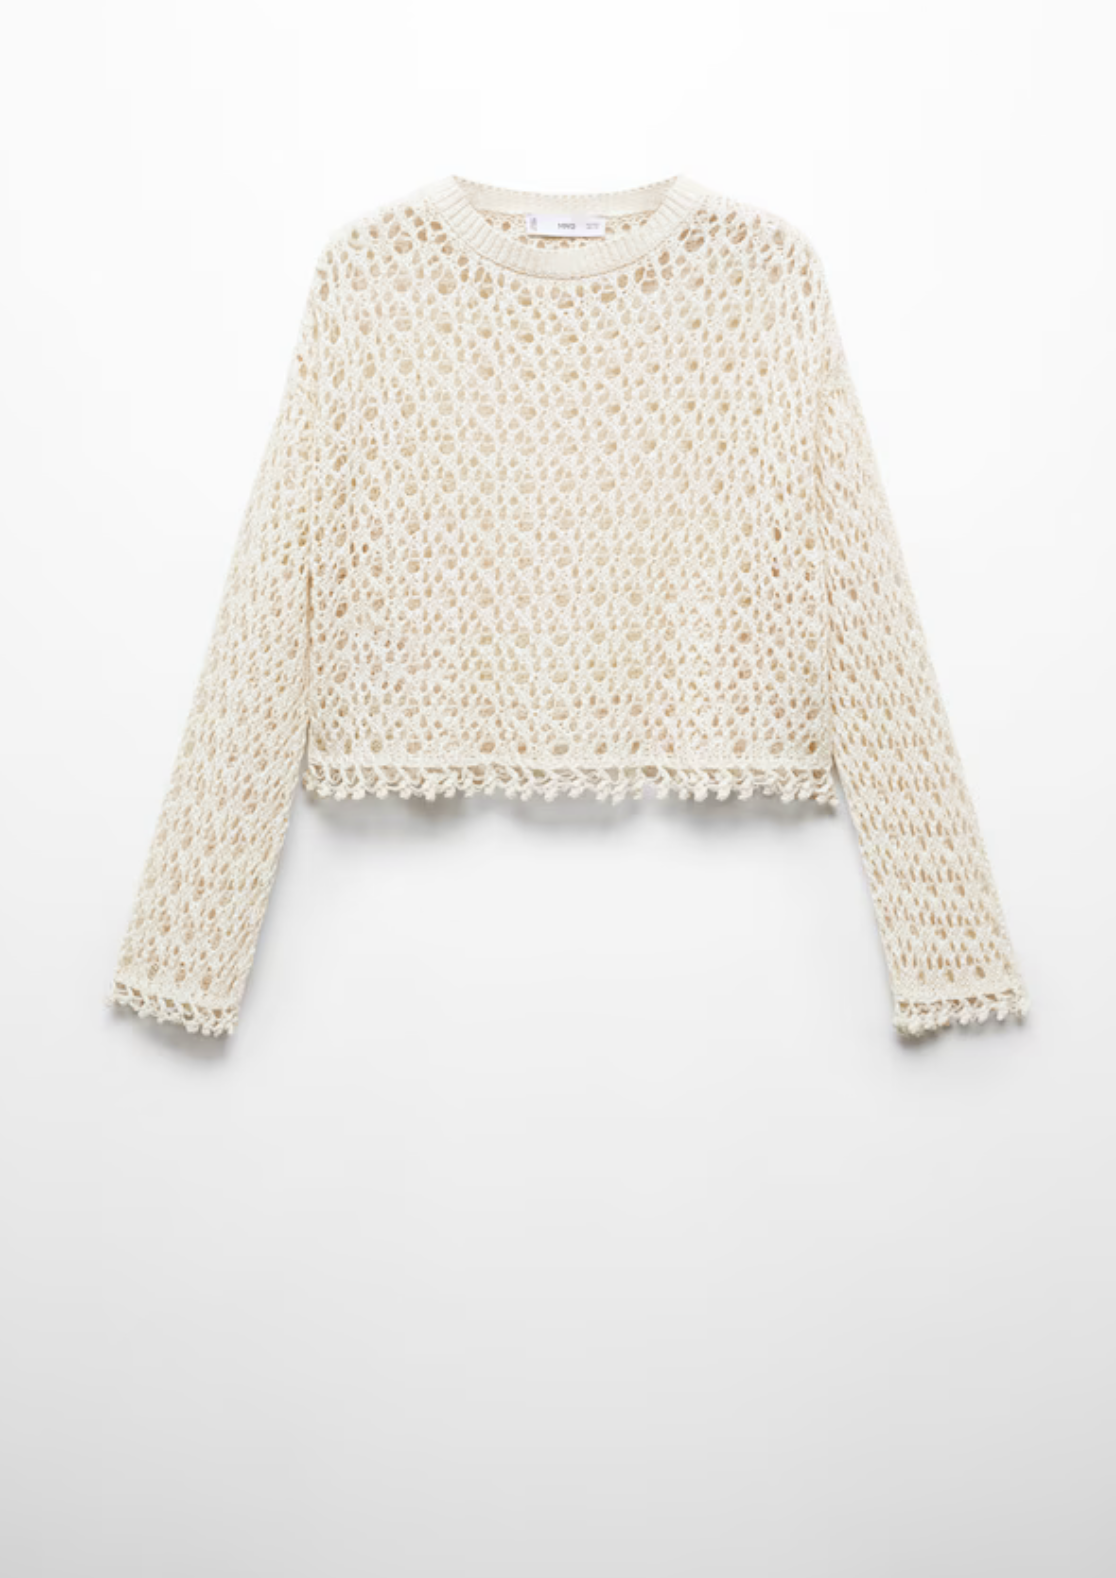 Este jersey de tejido crochet es ideal para tus próximas escapadas a la playa